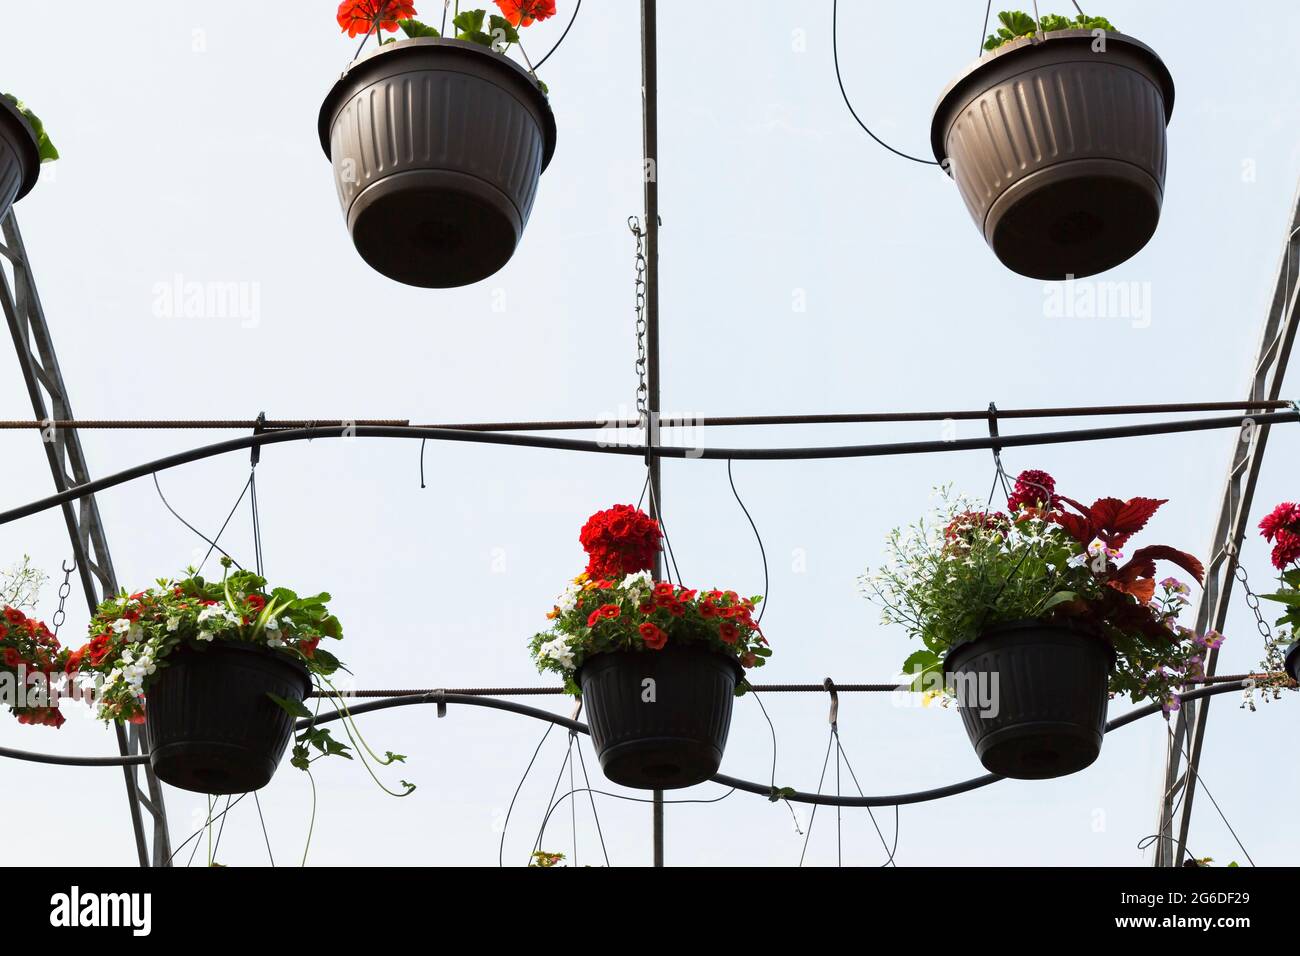 Plantas y flores anuales mixtas que crecen en cestas colgantes suspendidas  de barras metálicas de la estructura del techo dentro de un invernadero  Fotografía de stock - Alamy